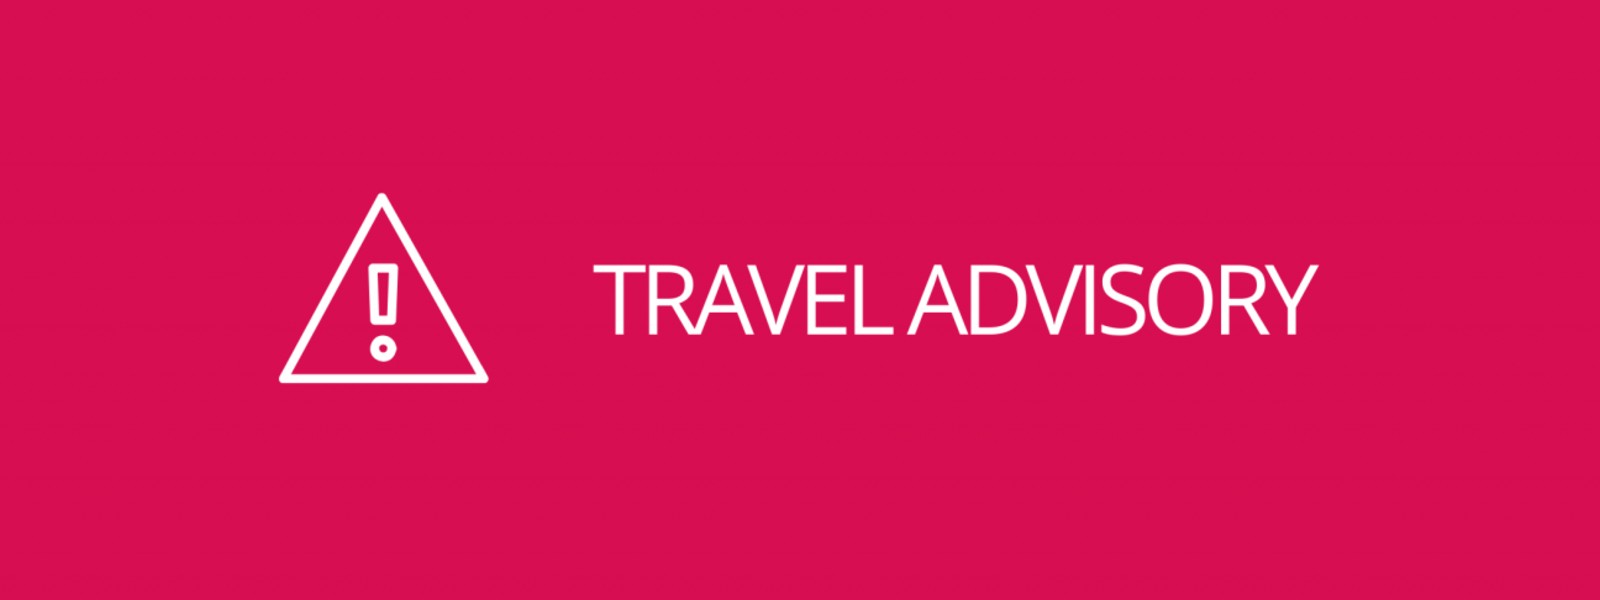 Travel advisory for Indians in Sri Lanka